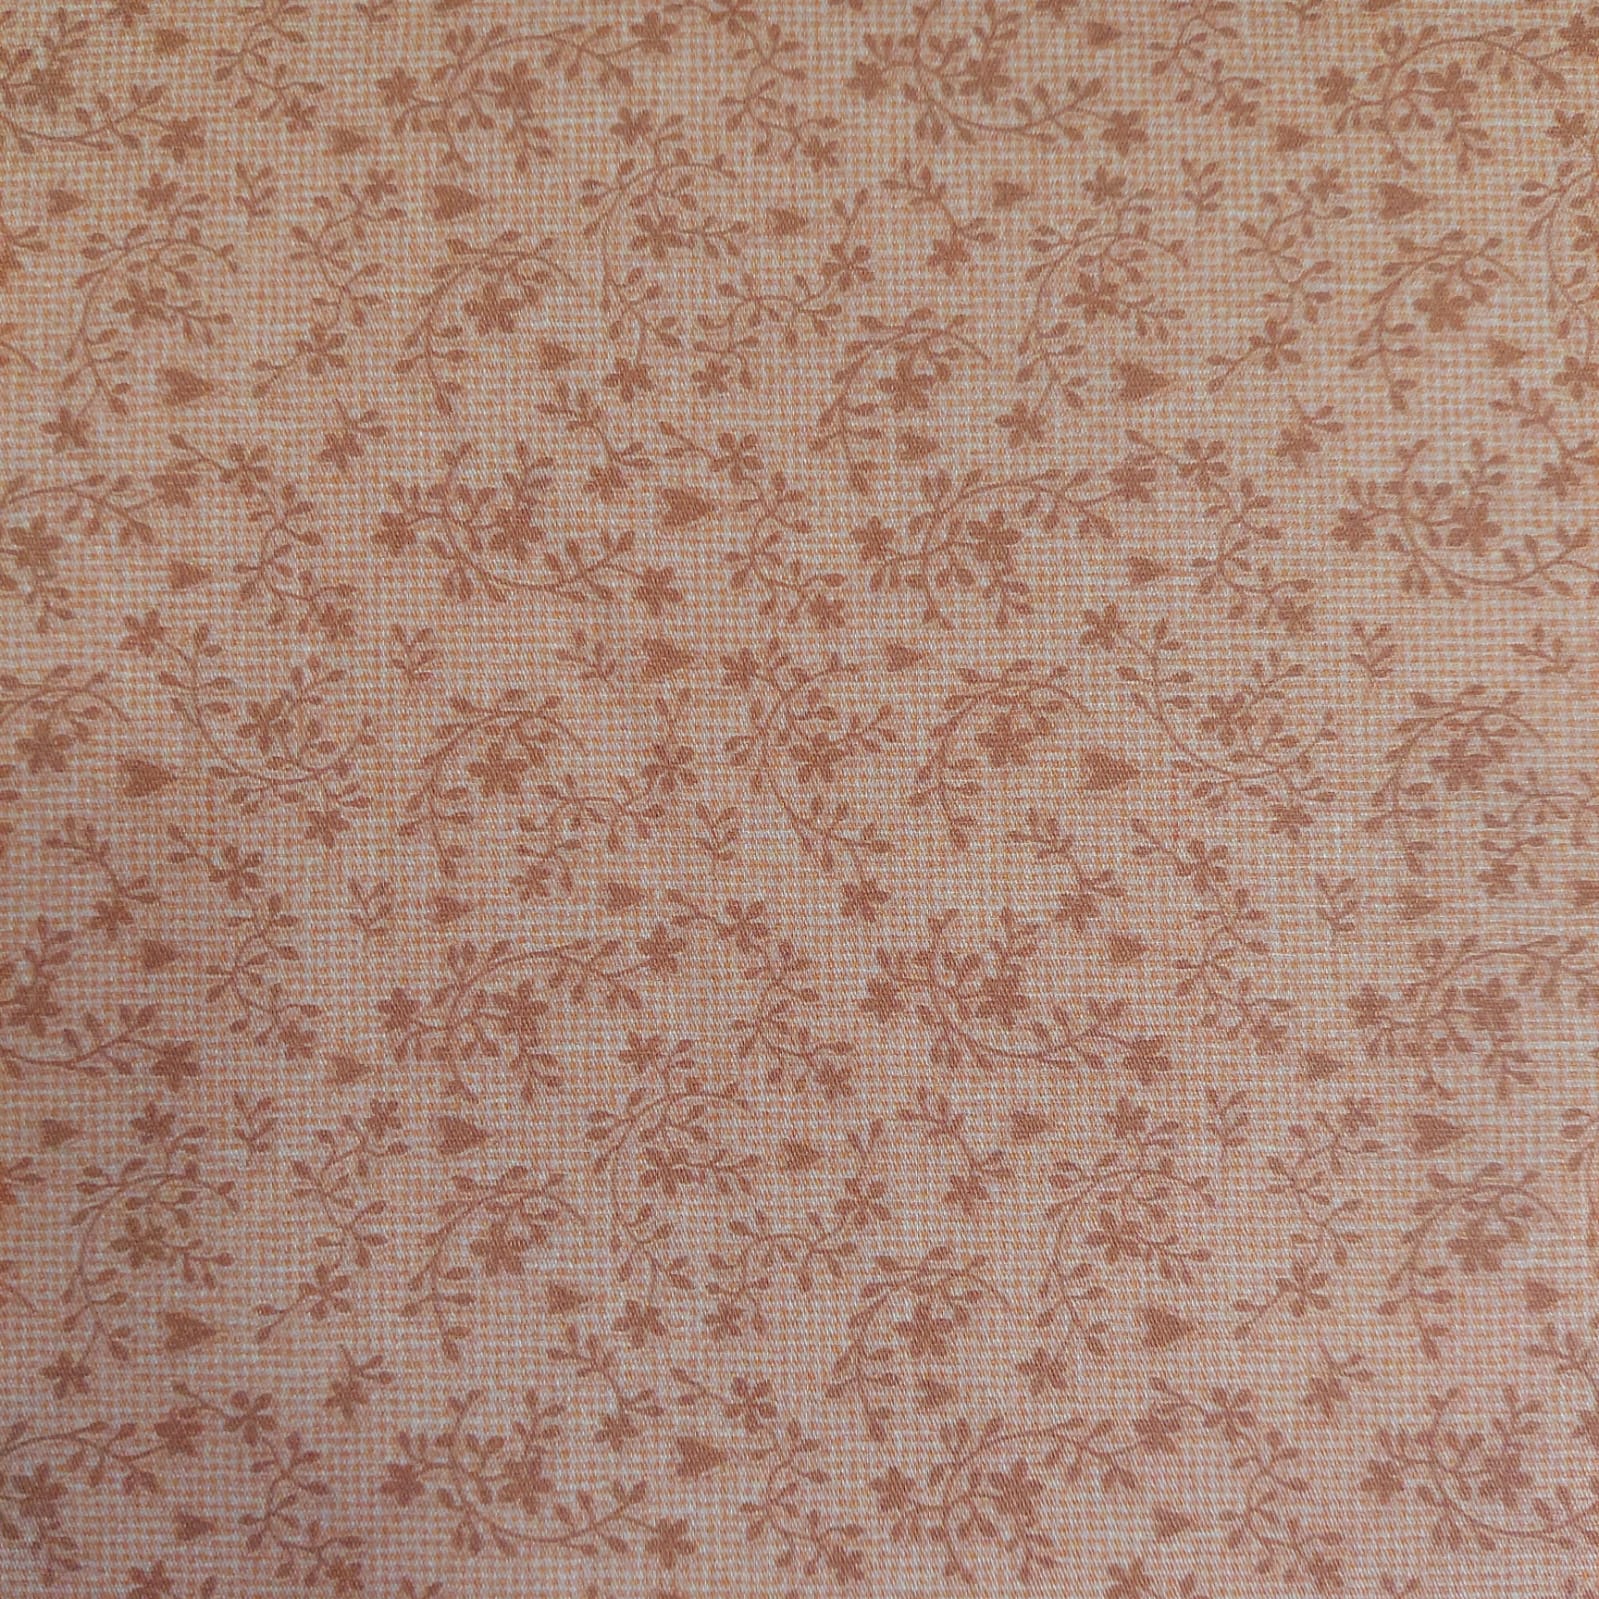 Tecido Tricoline digital - Col. Amo Aplique - arabesco rose - Fuxicos e Fricotes  (50x1,50cm)                